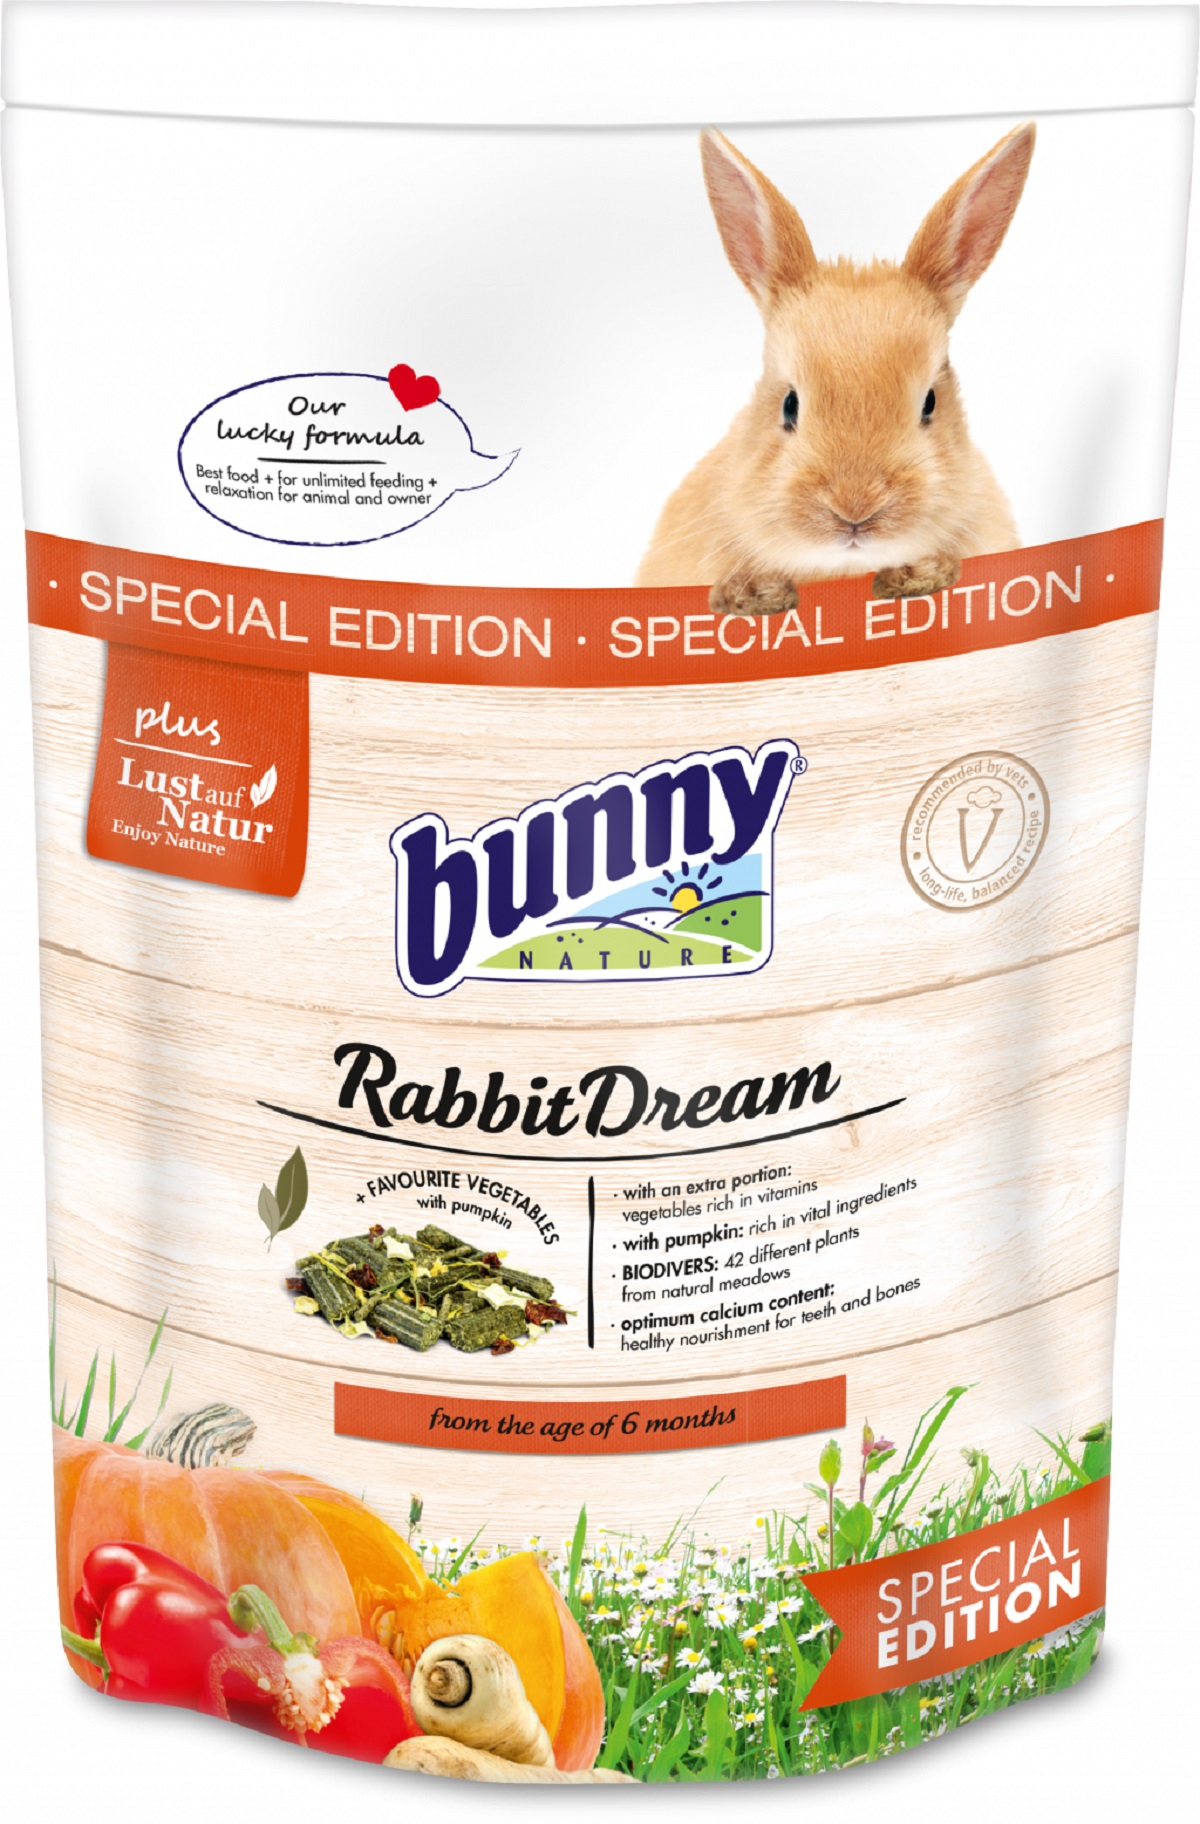 BUNNY RabbitDream Special Edition